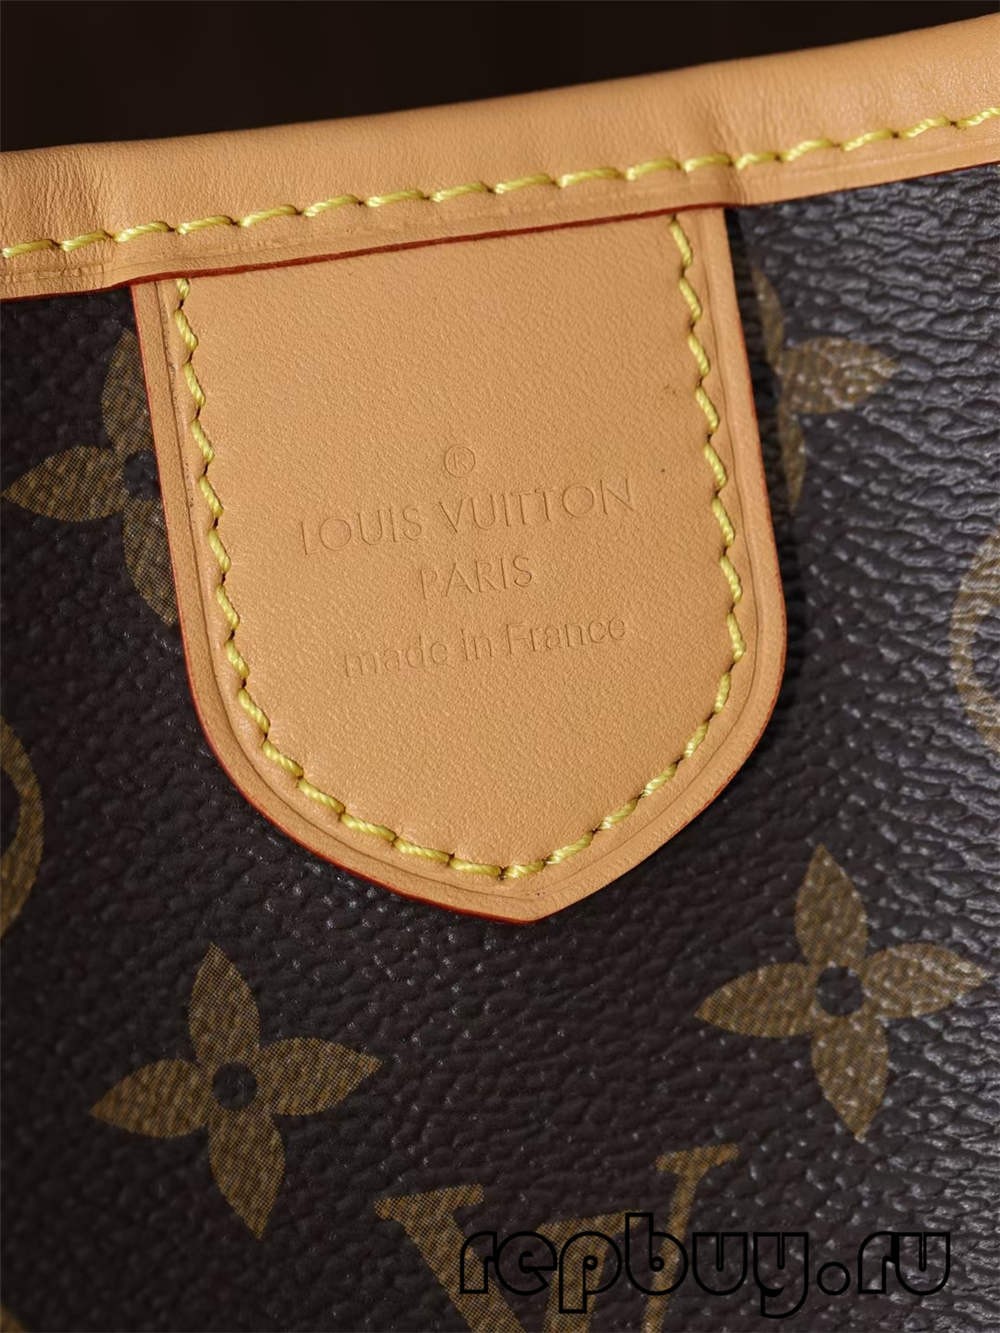 Louis Vuitton Re Fabrication yepamusoro mhando replica mabhegi (2022 Azvino)-Yakanakisa Hunhu Fake Louis Vuitton Bag Online Store, Replica mugadziri bag ru